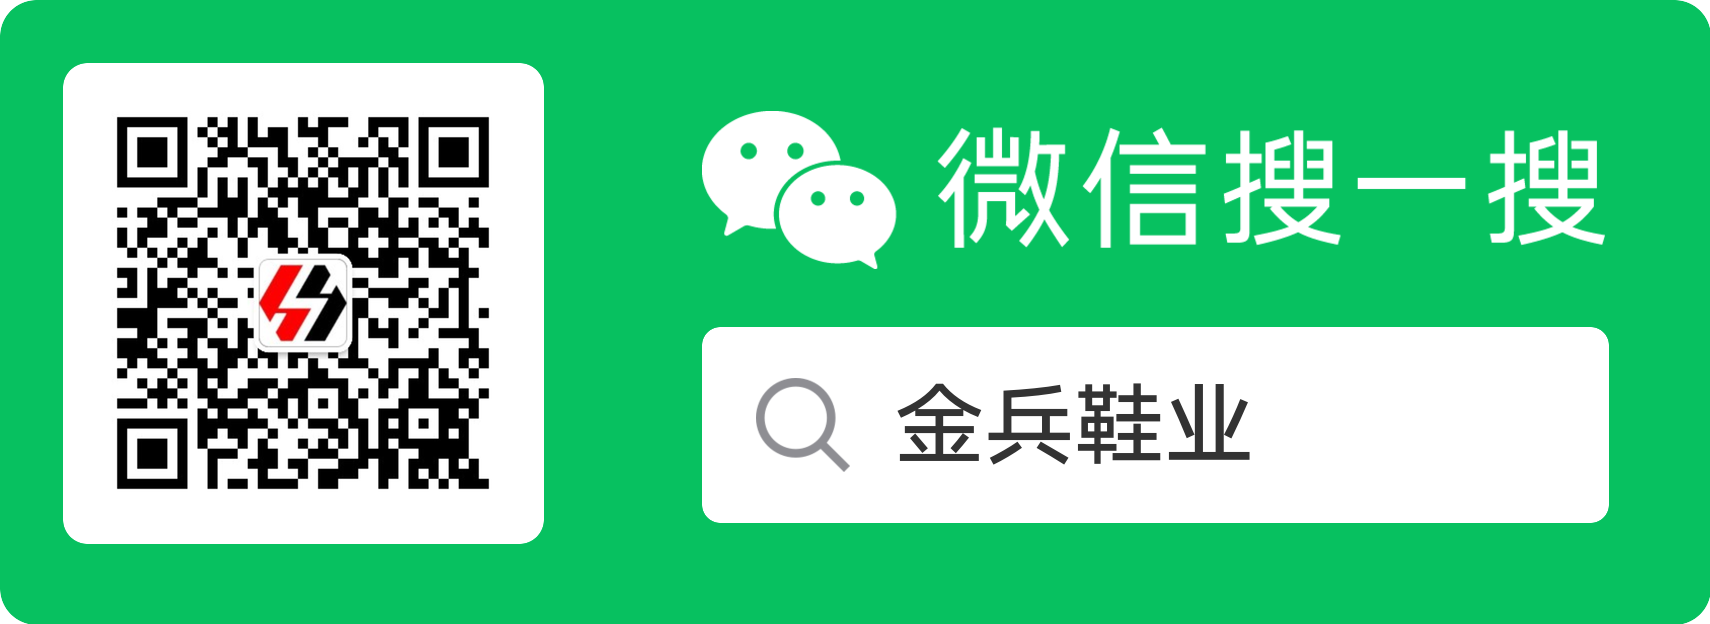 Скачать код или WeChat Поиск Public：Золотая обувь.png